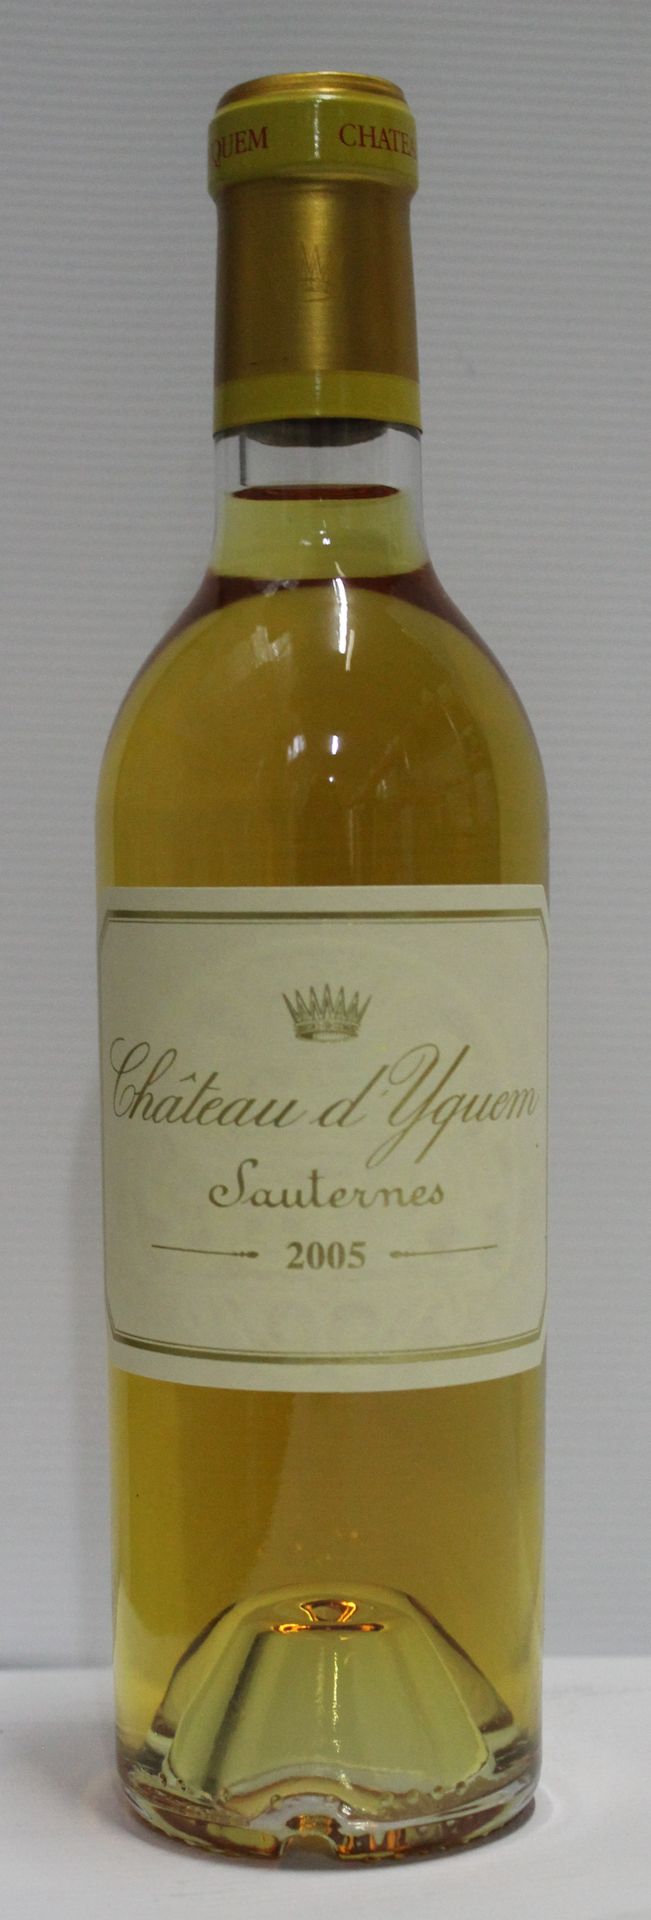 Null 1瓶37,5cl - 索泰尔讷一级酒庄 - 伊甘酒庄 - 2005年甜白葡萄酒

瓶身完美保存，温度理想。